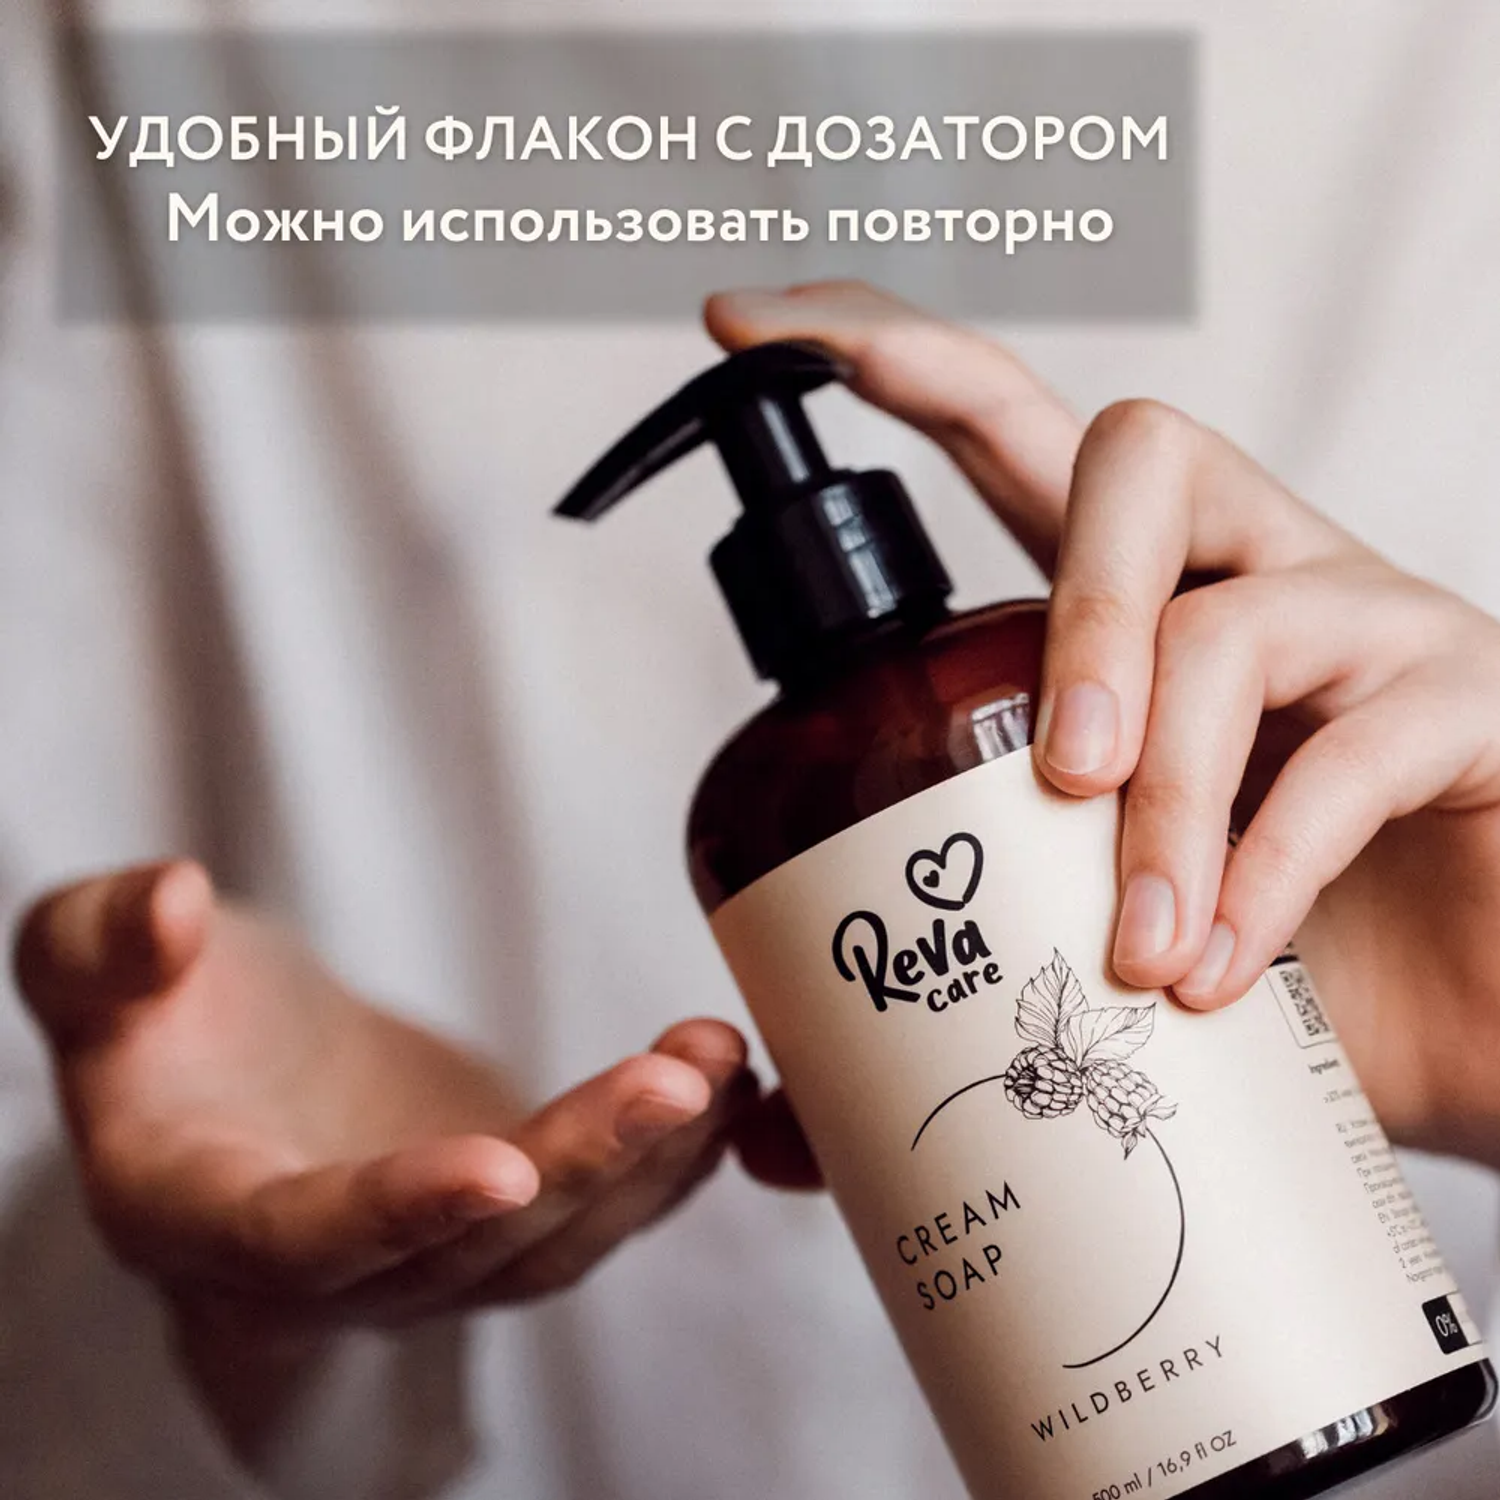 Жидкое мыло Reva Care для рук Cream Soap с ароматом ежевики набор 8 шт по 500 мл - фото 2